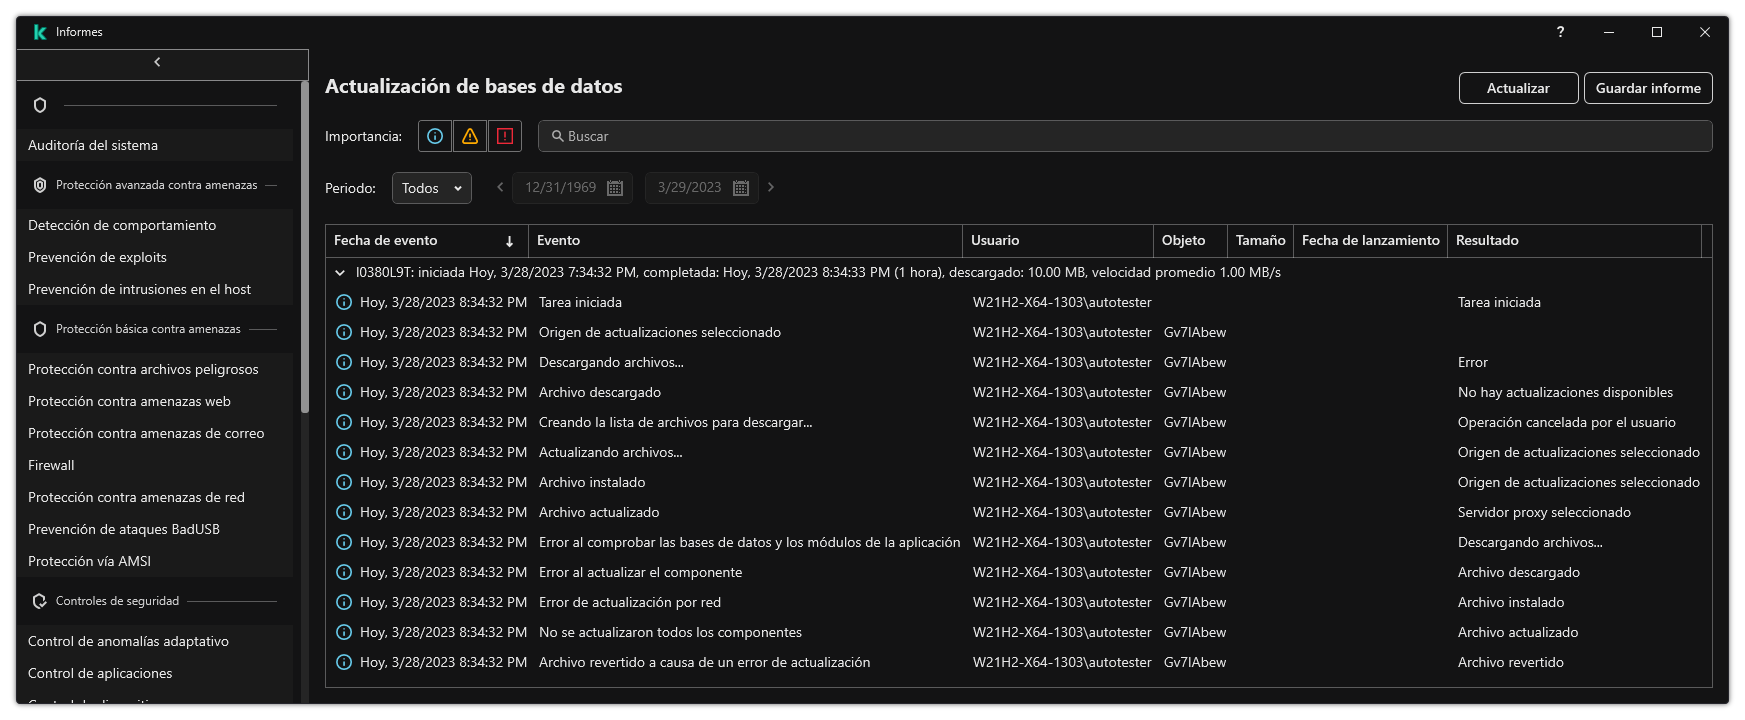 Una ventana con la lista de eventos en el informe. El usuario puede filtrar/ordenar eventos y guardar informes en un archivo.